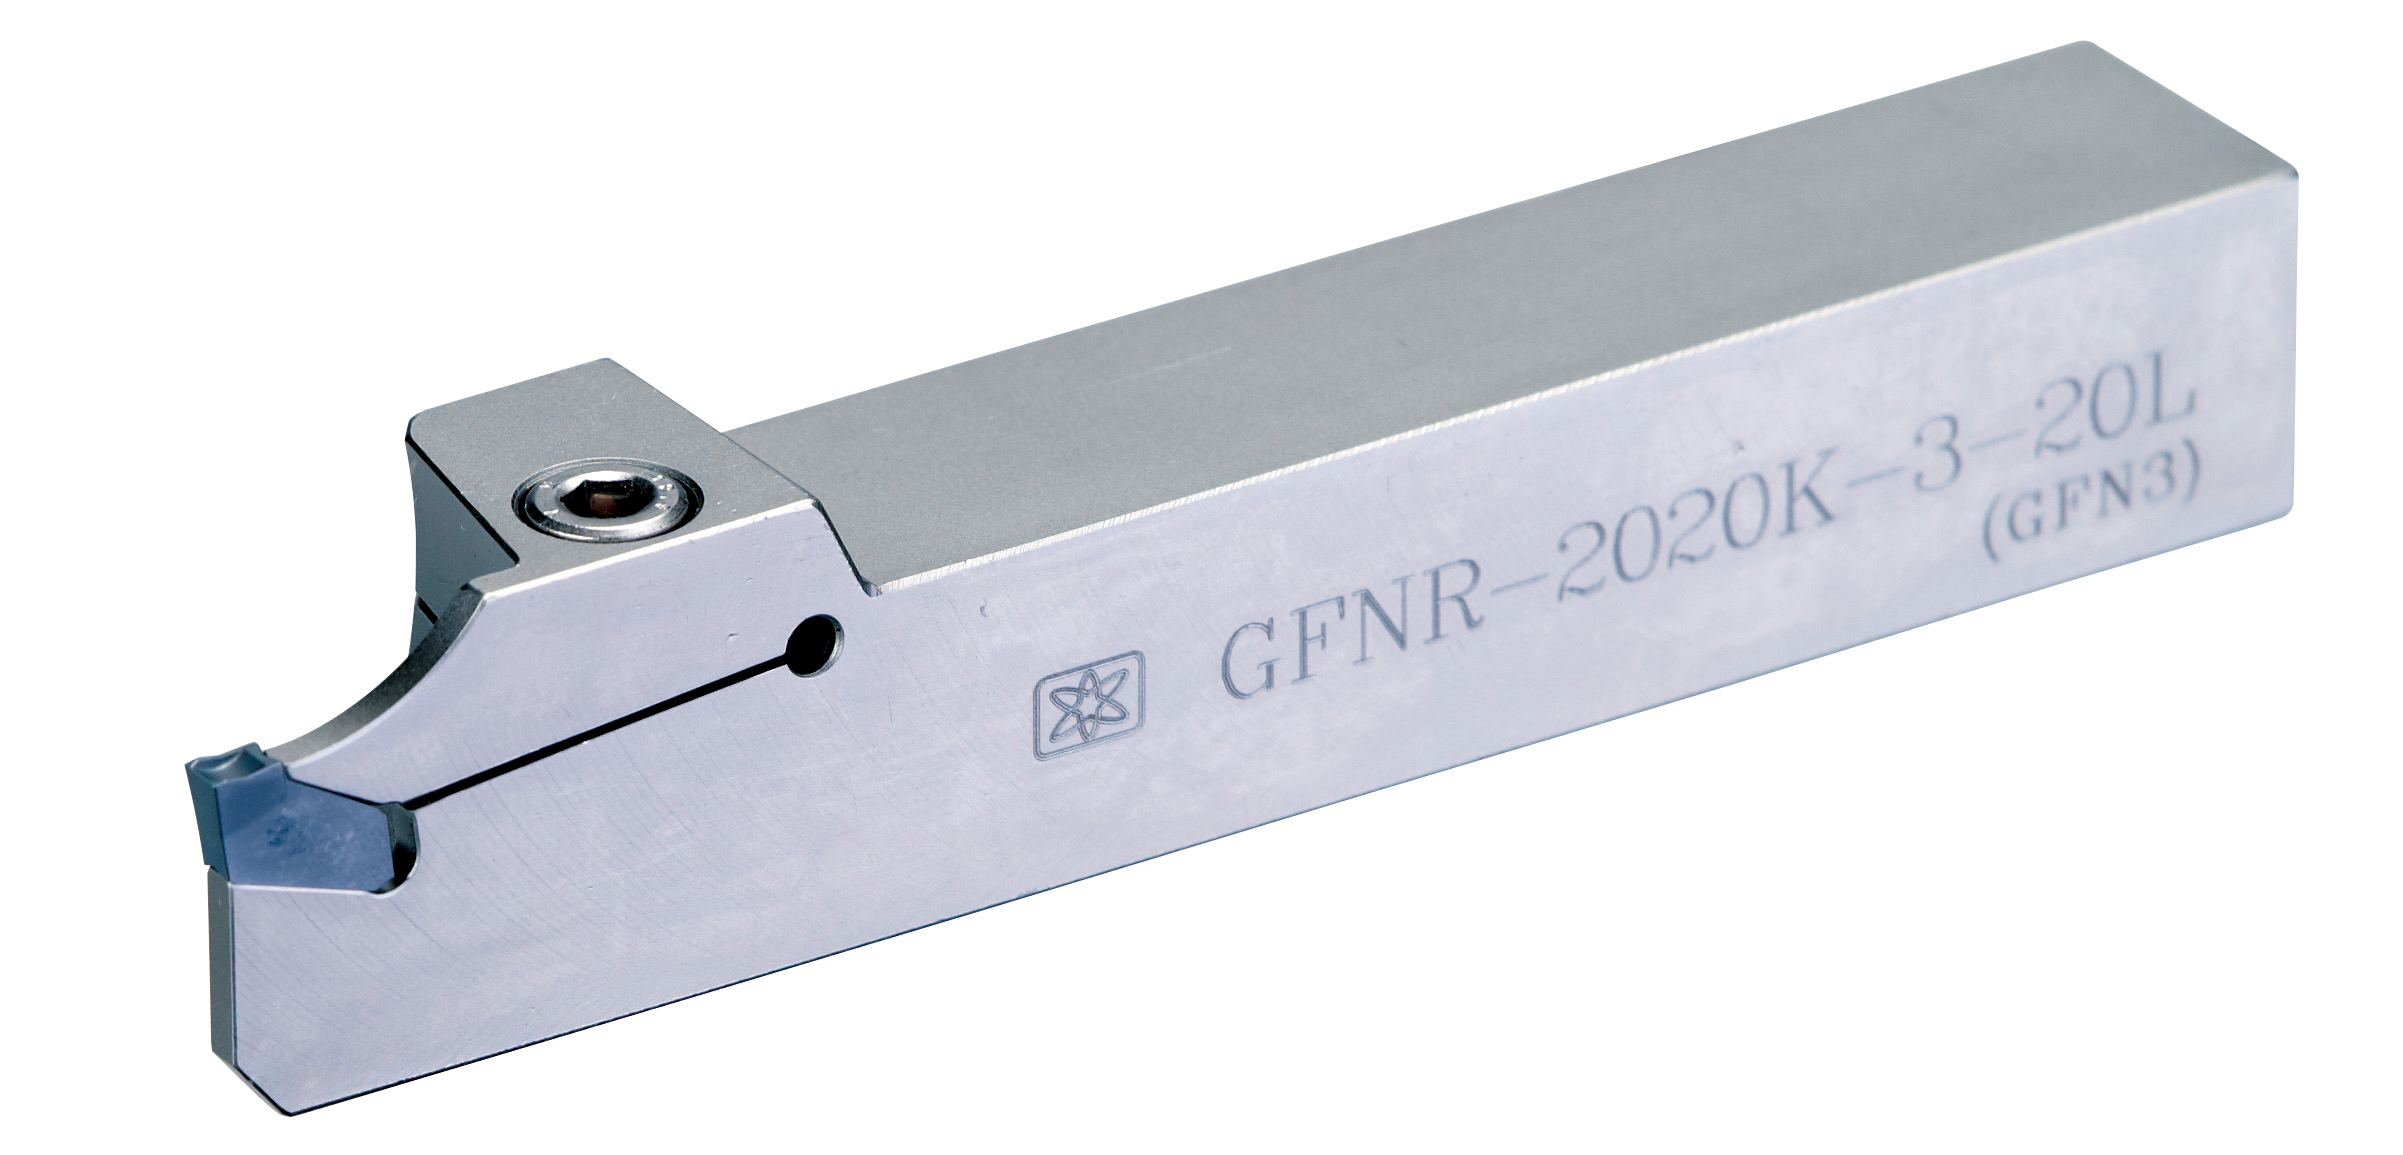 GFNR (GFN2 / GFN3) 外徑切槽刀